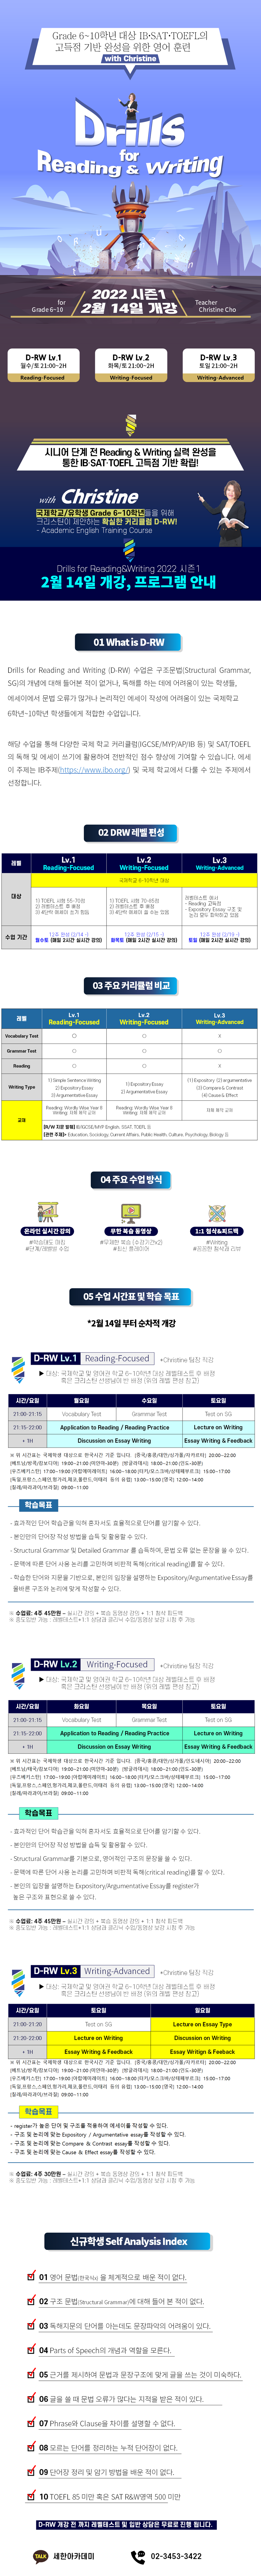 2022년 6~10학년 대상 Reading&Writing 2022 시즌1 개강! (D-RW) 내용 관련 포스터